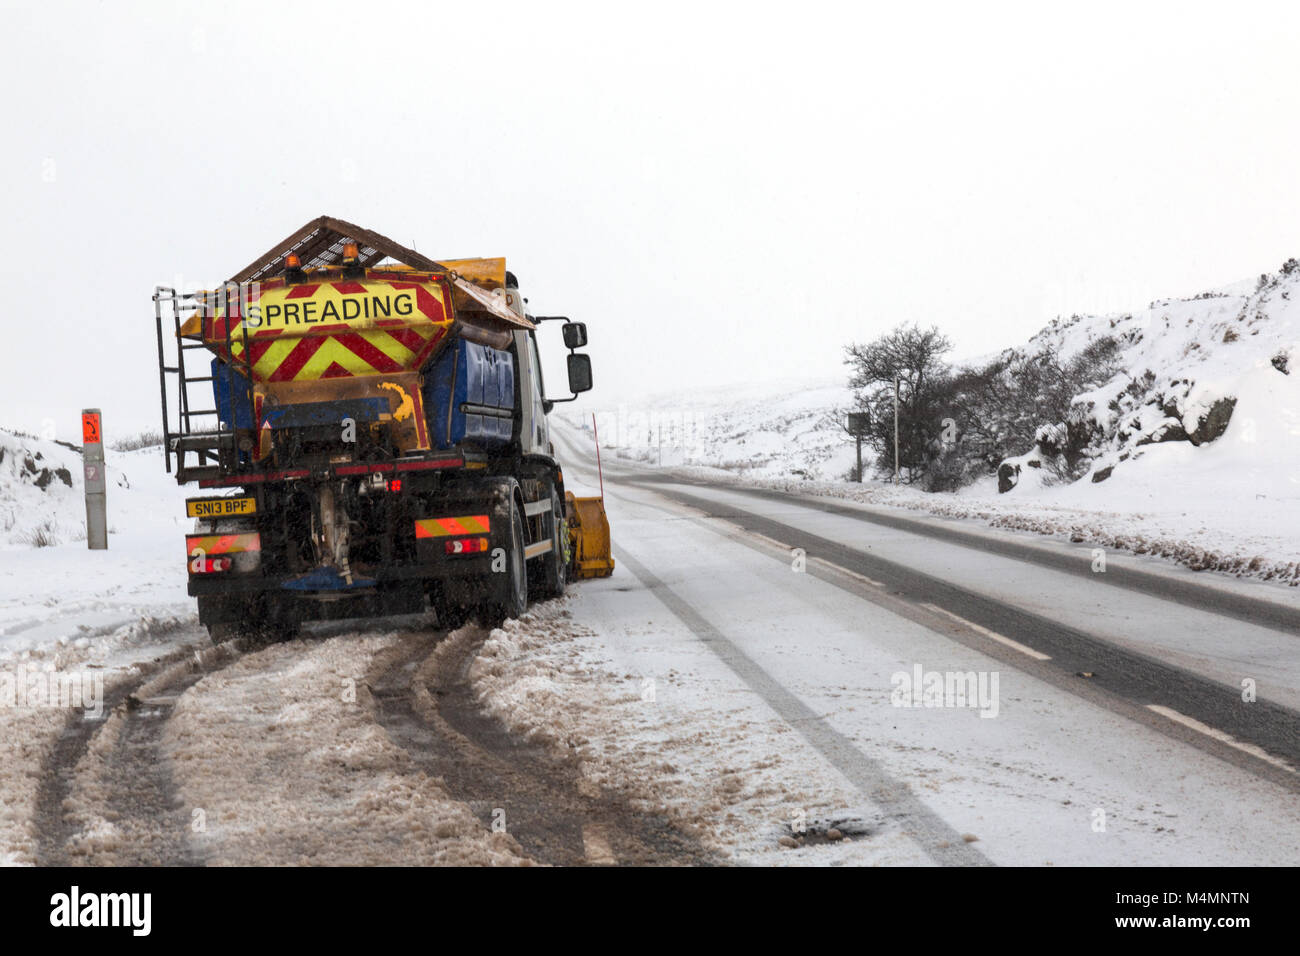 Una sal extendiendo o gritting camión al lado de un raod con Dustin g de nieve fresca en Glencoe, Escocia durante el invierno. Foto de stock